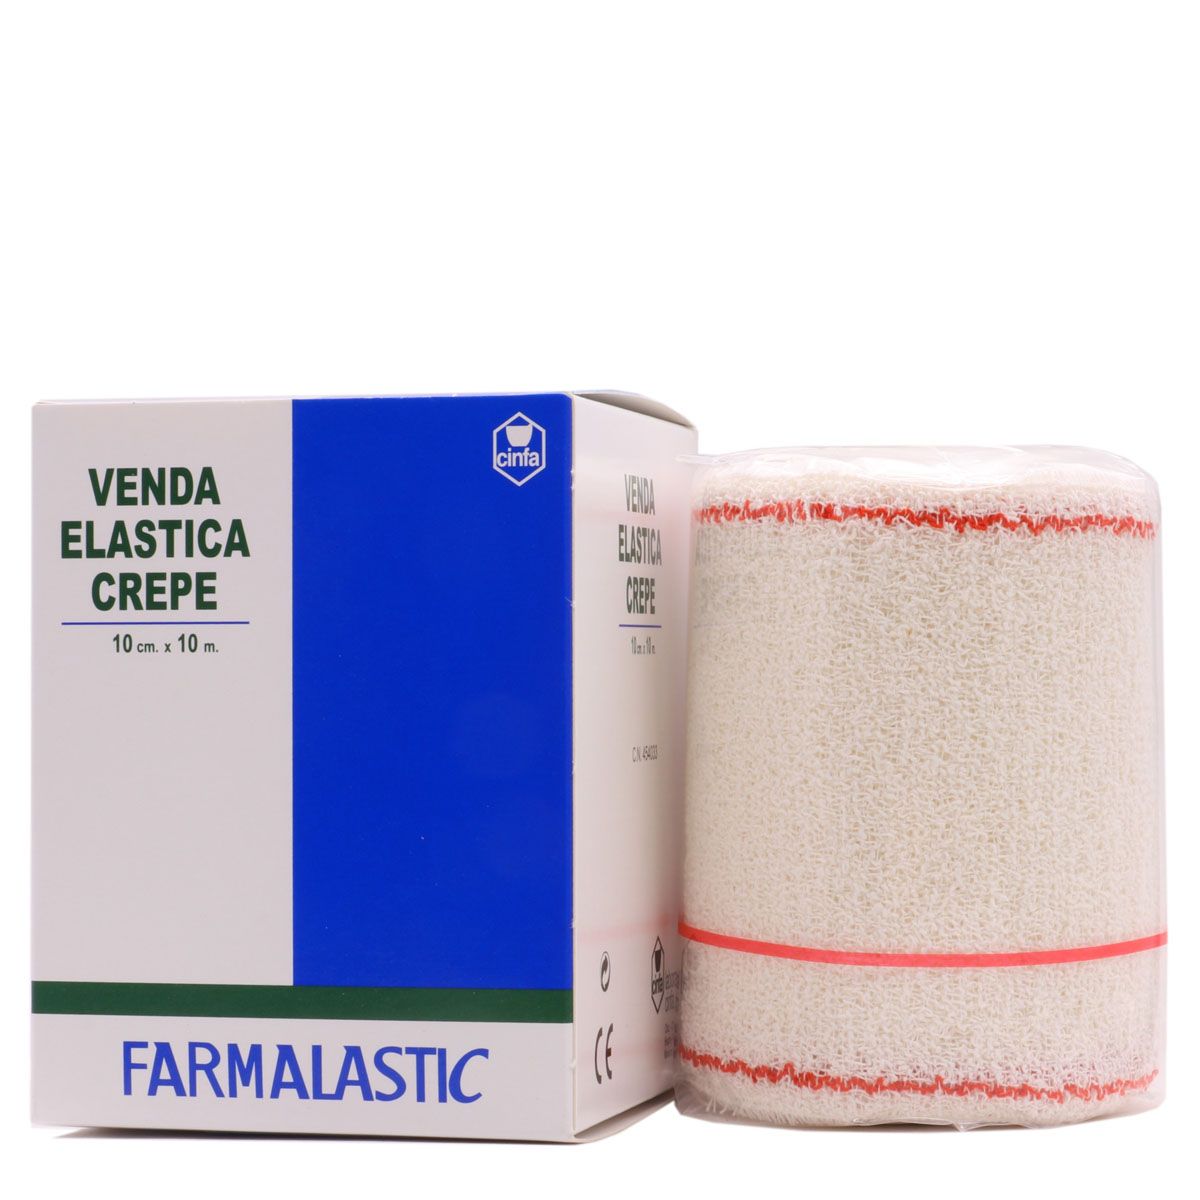 Venda Elástica 4,5m x 5cm Beige Farmalastic - La Farmacia de Alba